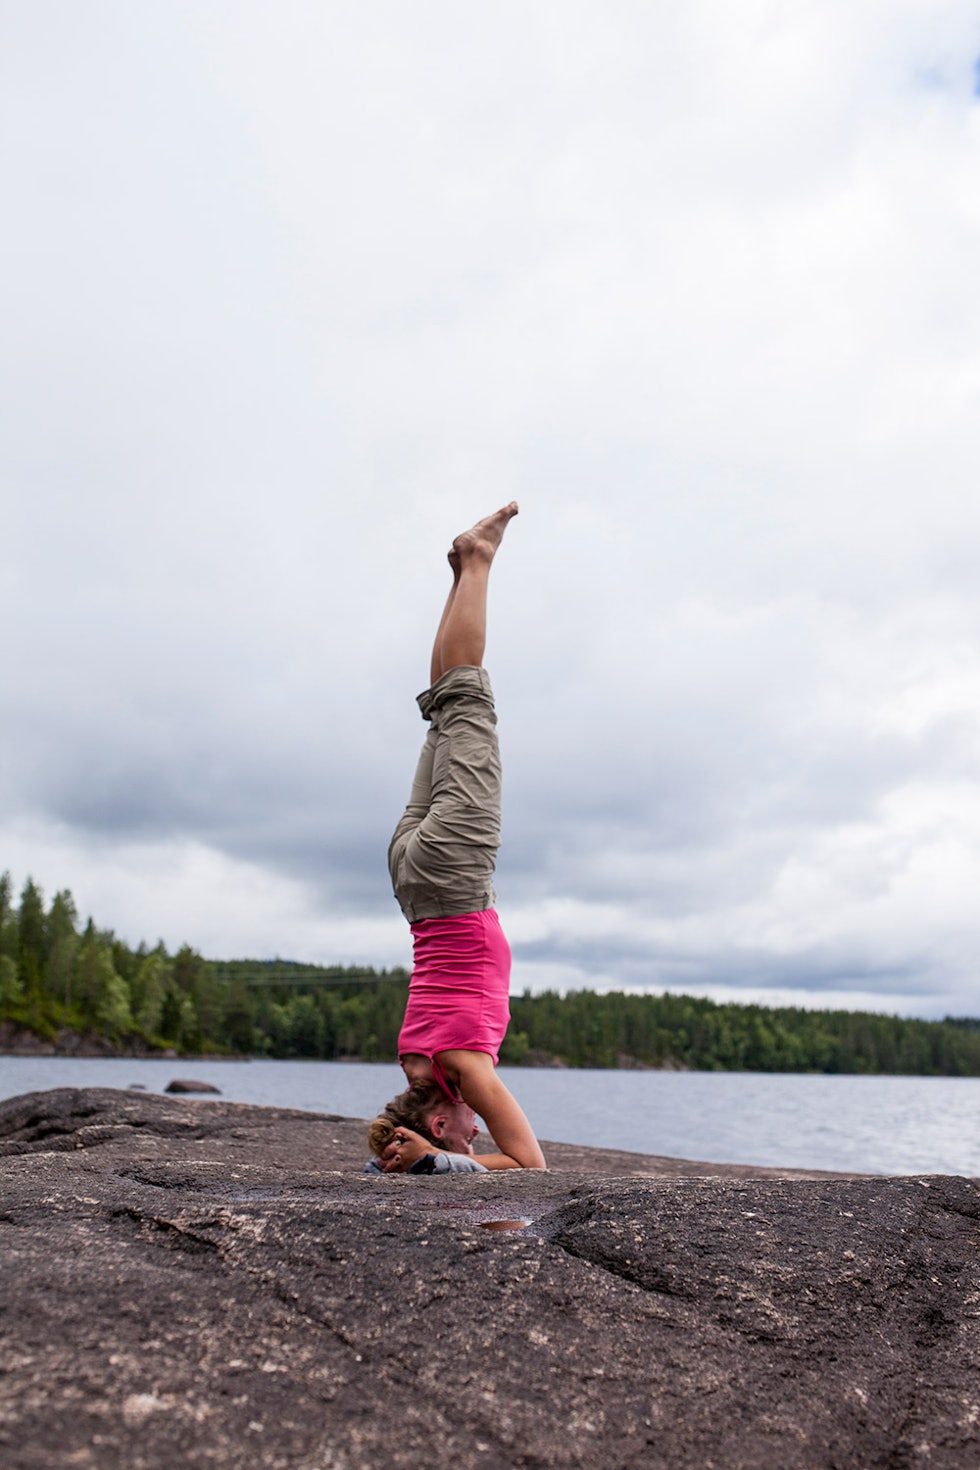 KJENN ETTER: – Yoga handler først og fremst om å bevistgjøre seg selv, åpne alle sanger og kjenne på alle inntrykk, undertreker kursinstruktøren. Foto: Marte Stensland Jørgensen.